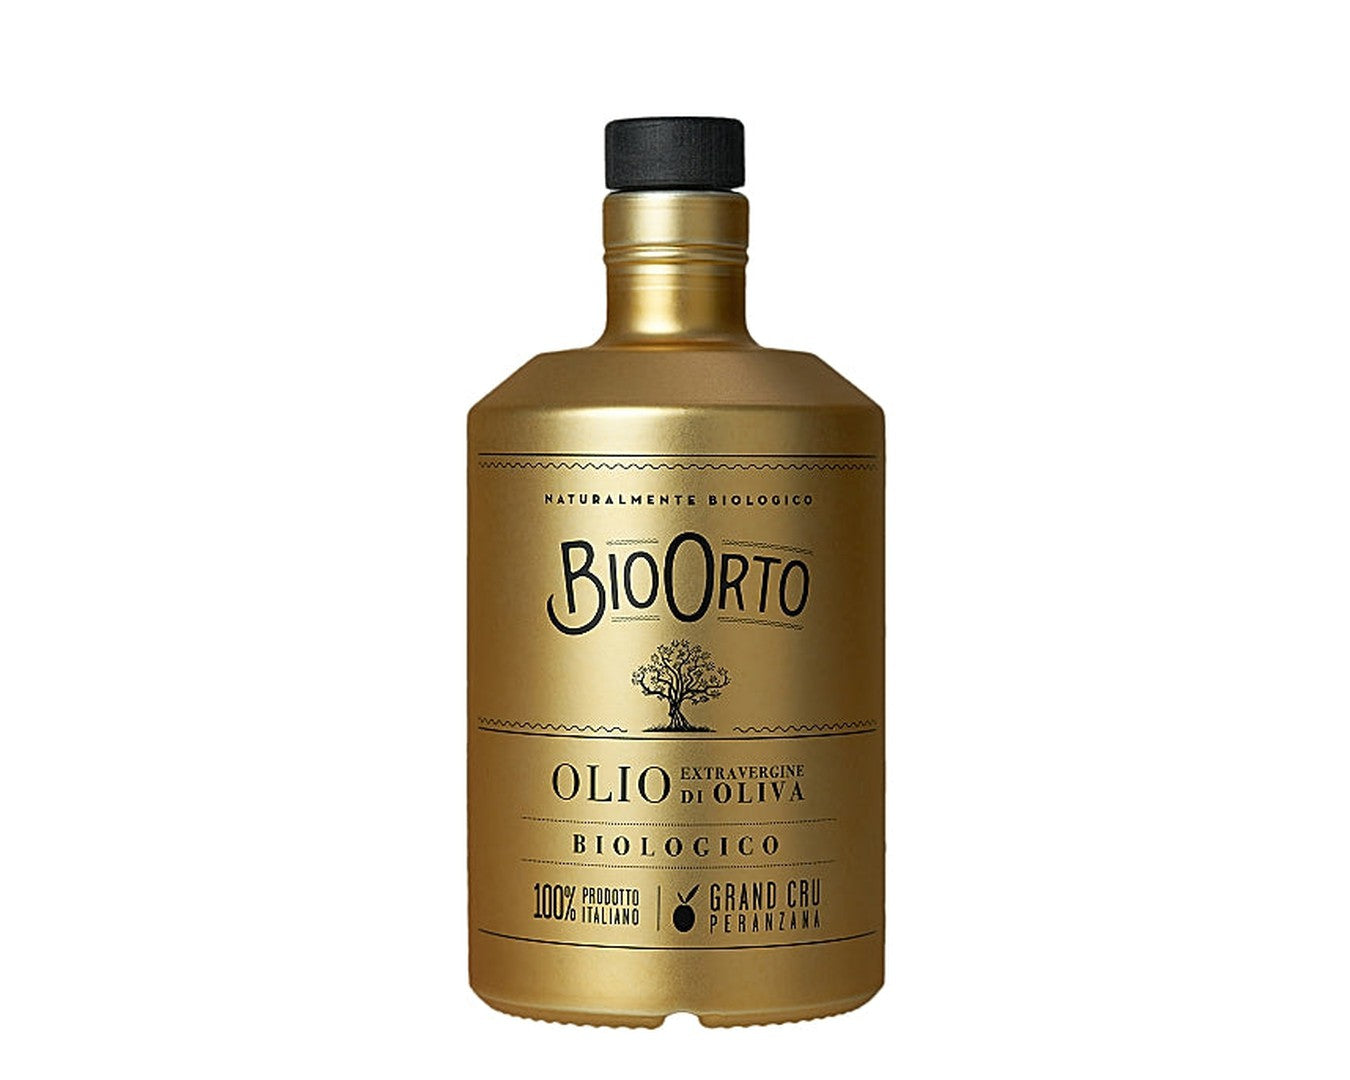 Bio Orto Gran Cru Peranzana 500ml-Olive Oil-The Local Basket